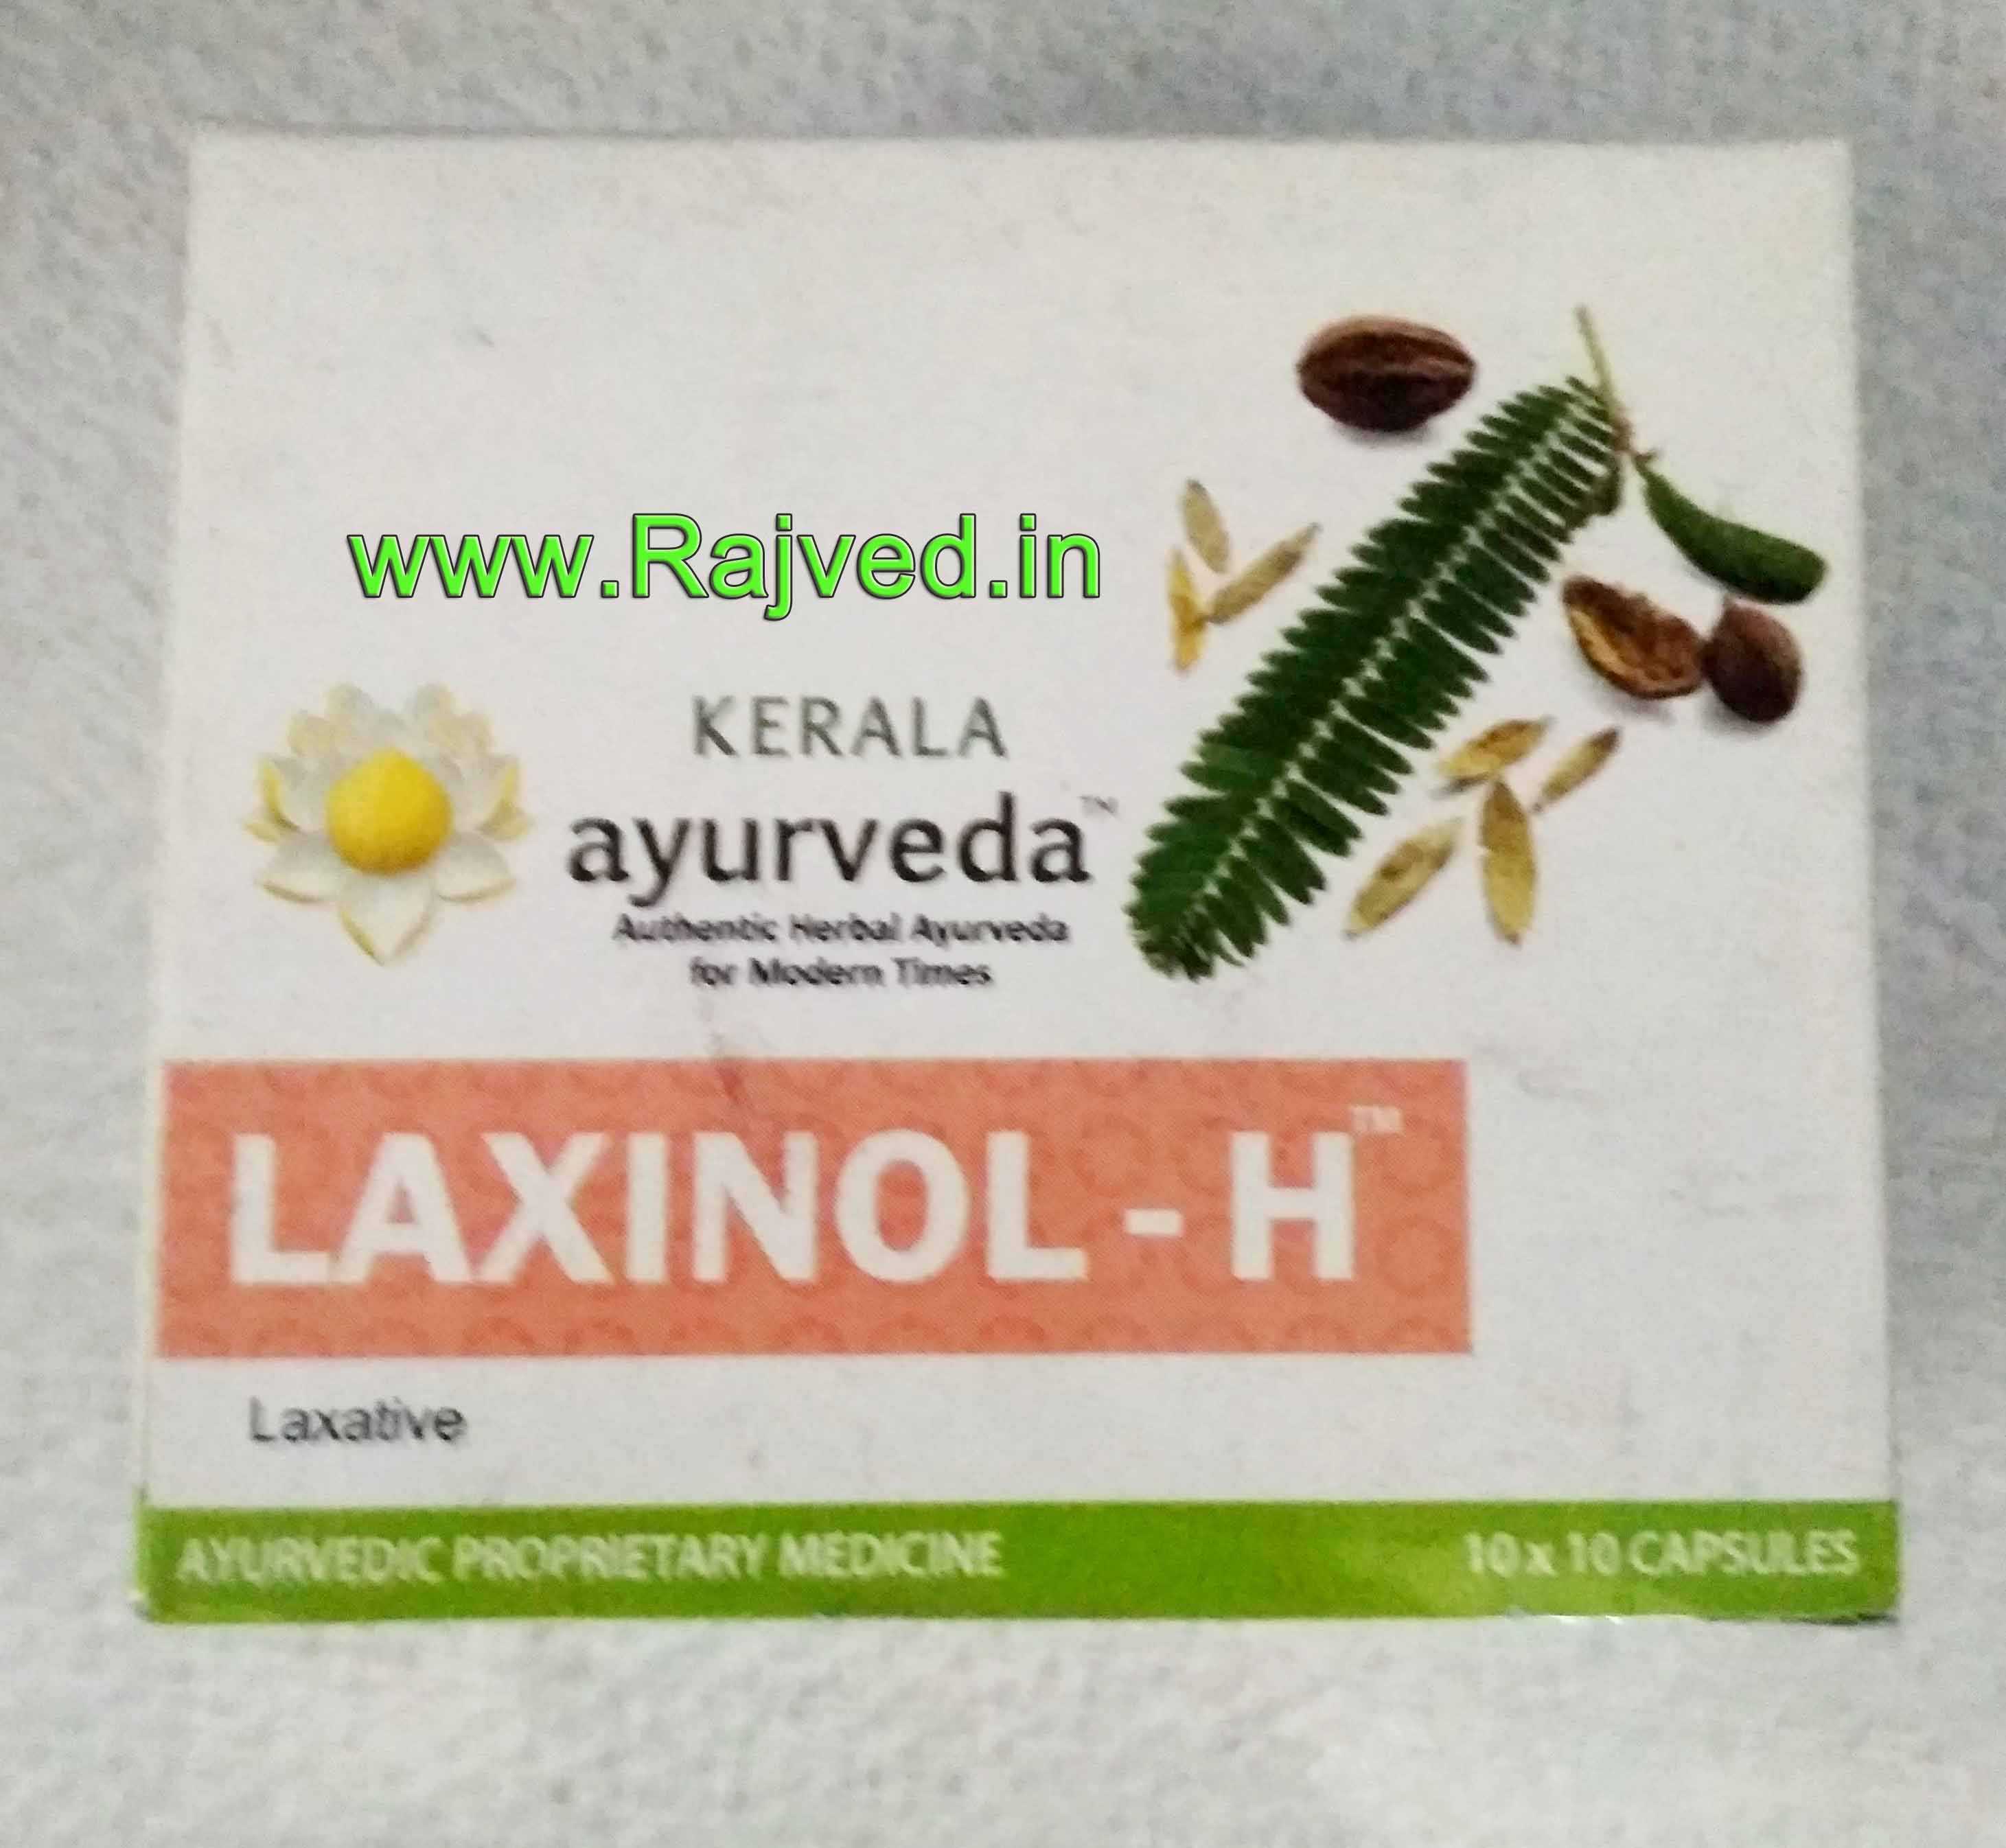 laxinol-h capsule 100 cap upto 15% off kerala ayurveda Ltd